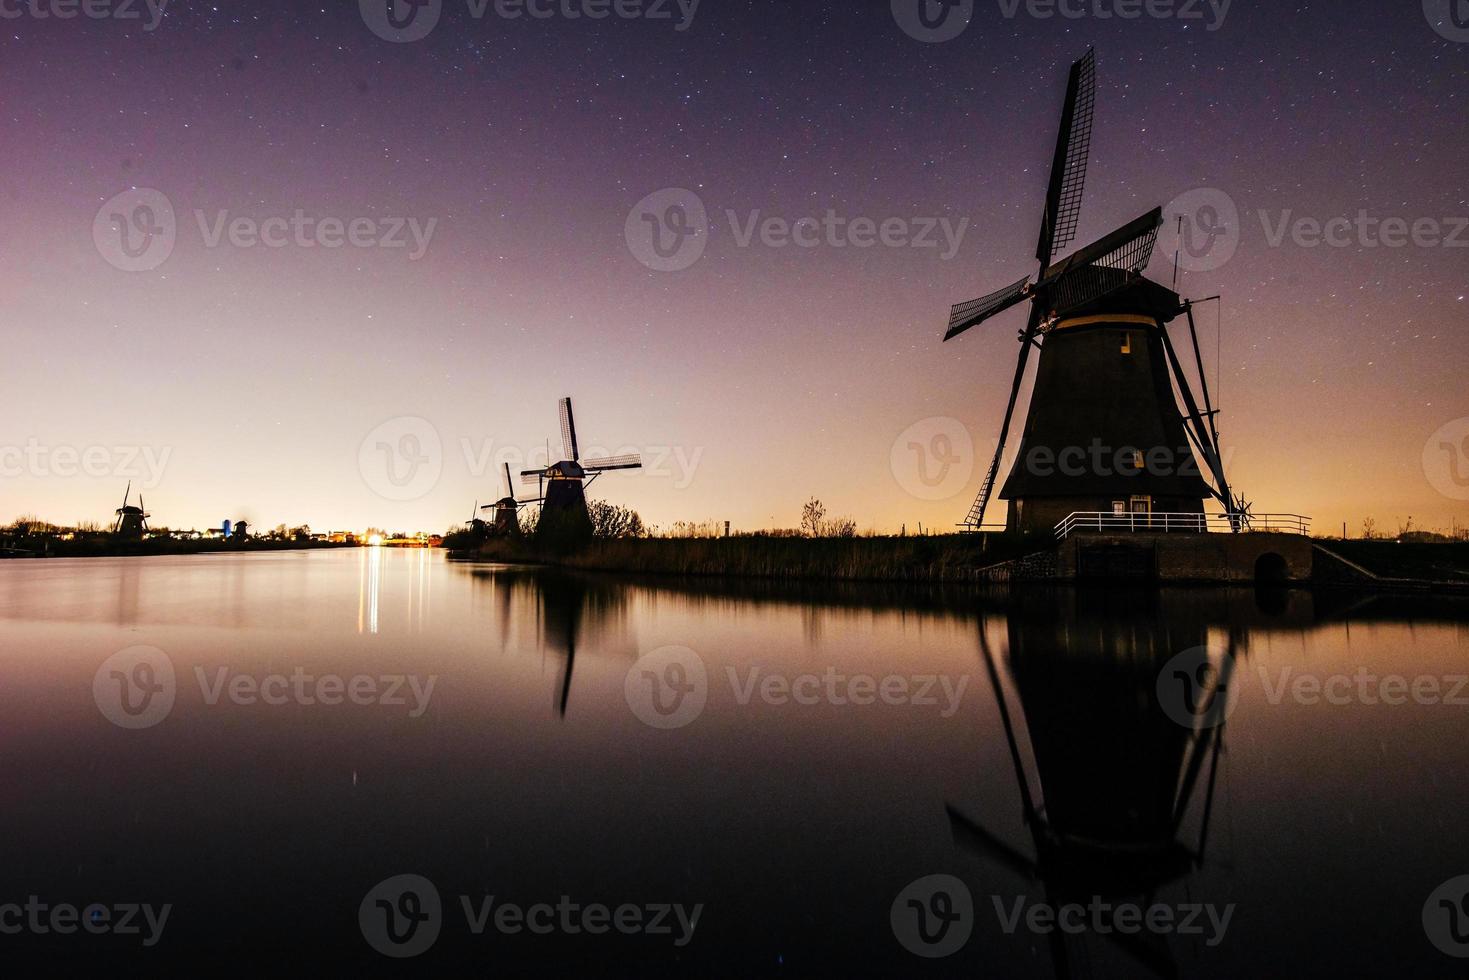 céu estrelado sobre moinhos holandeses. foto